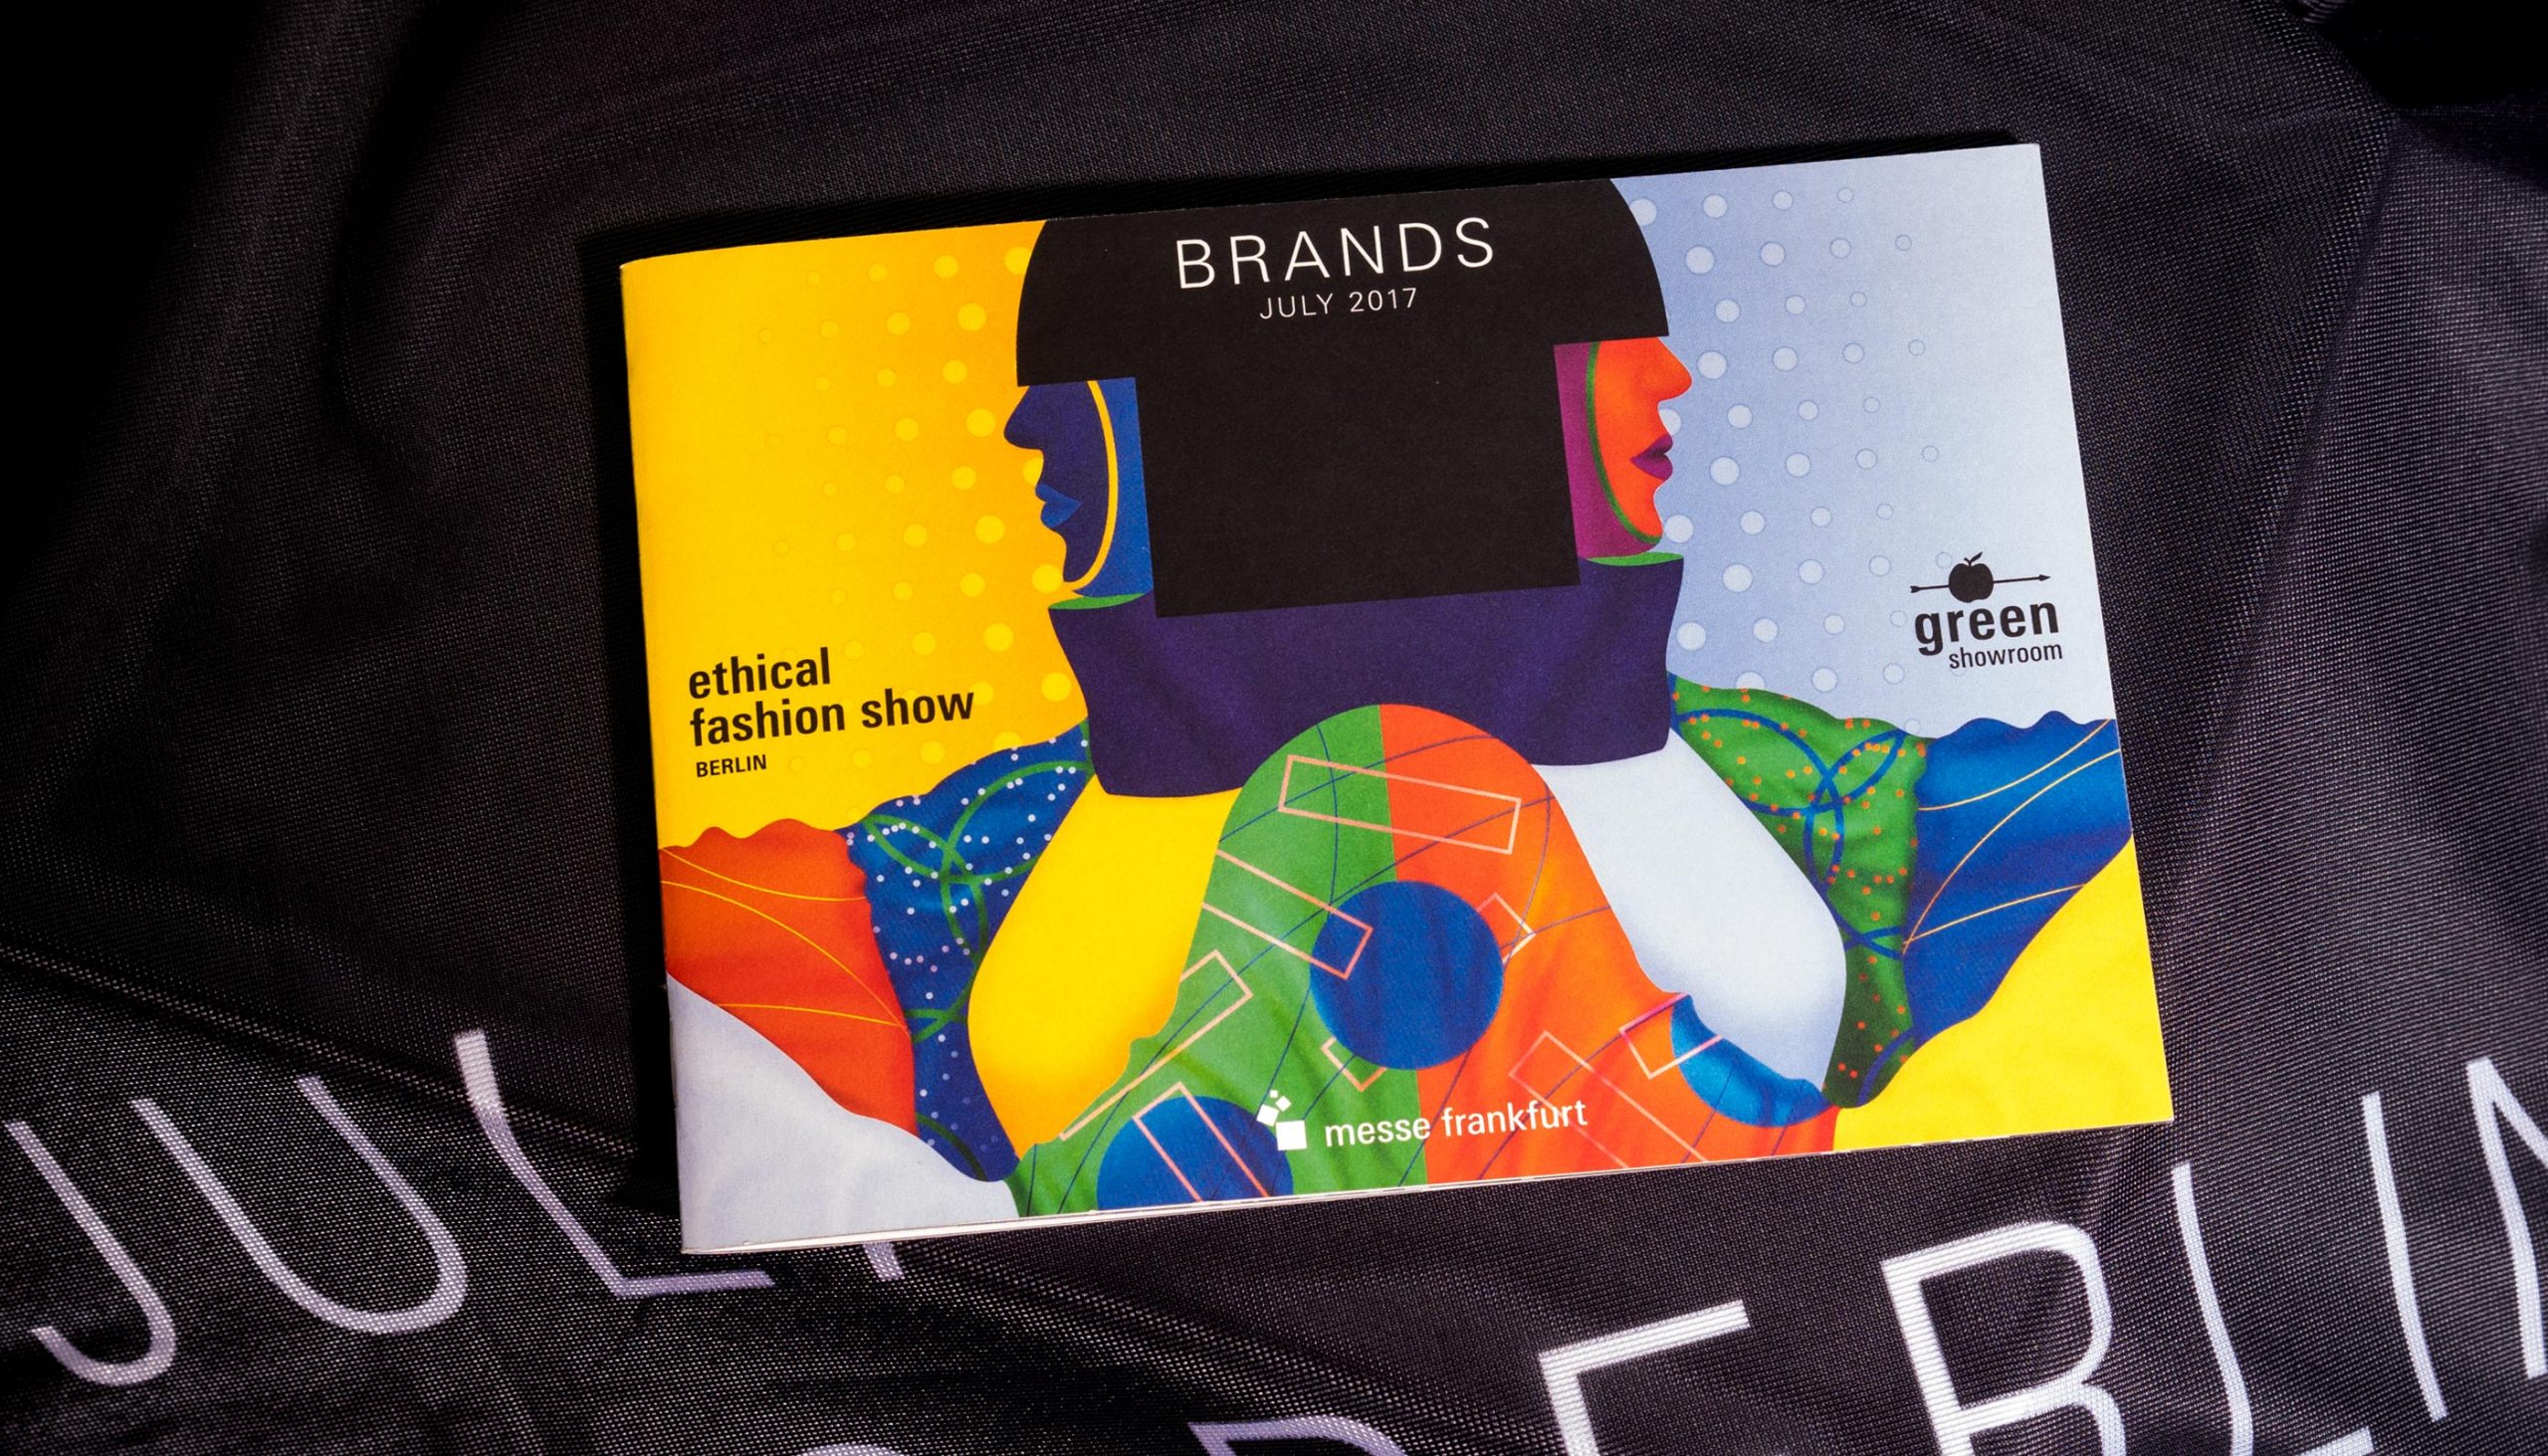 Messe Frankfurt – Ethical Fashion Show und Green Showroom Brandbook Detail Typografie Juli 2017 Brandbook Cover – Uthmöller und Partner